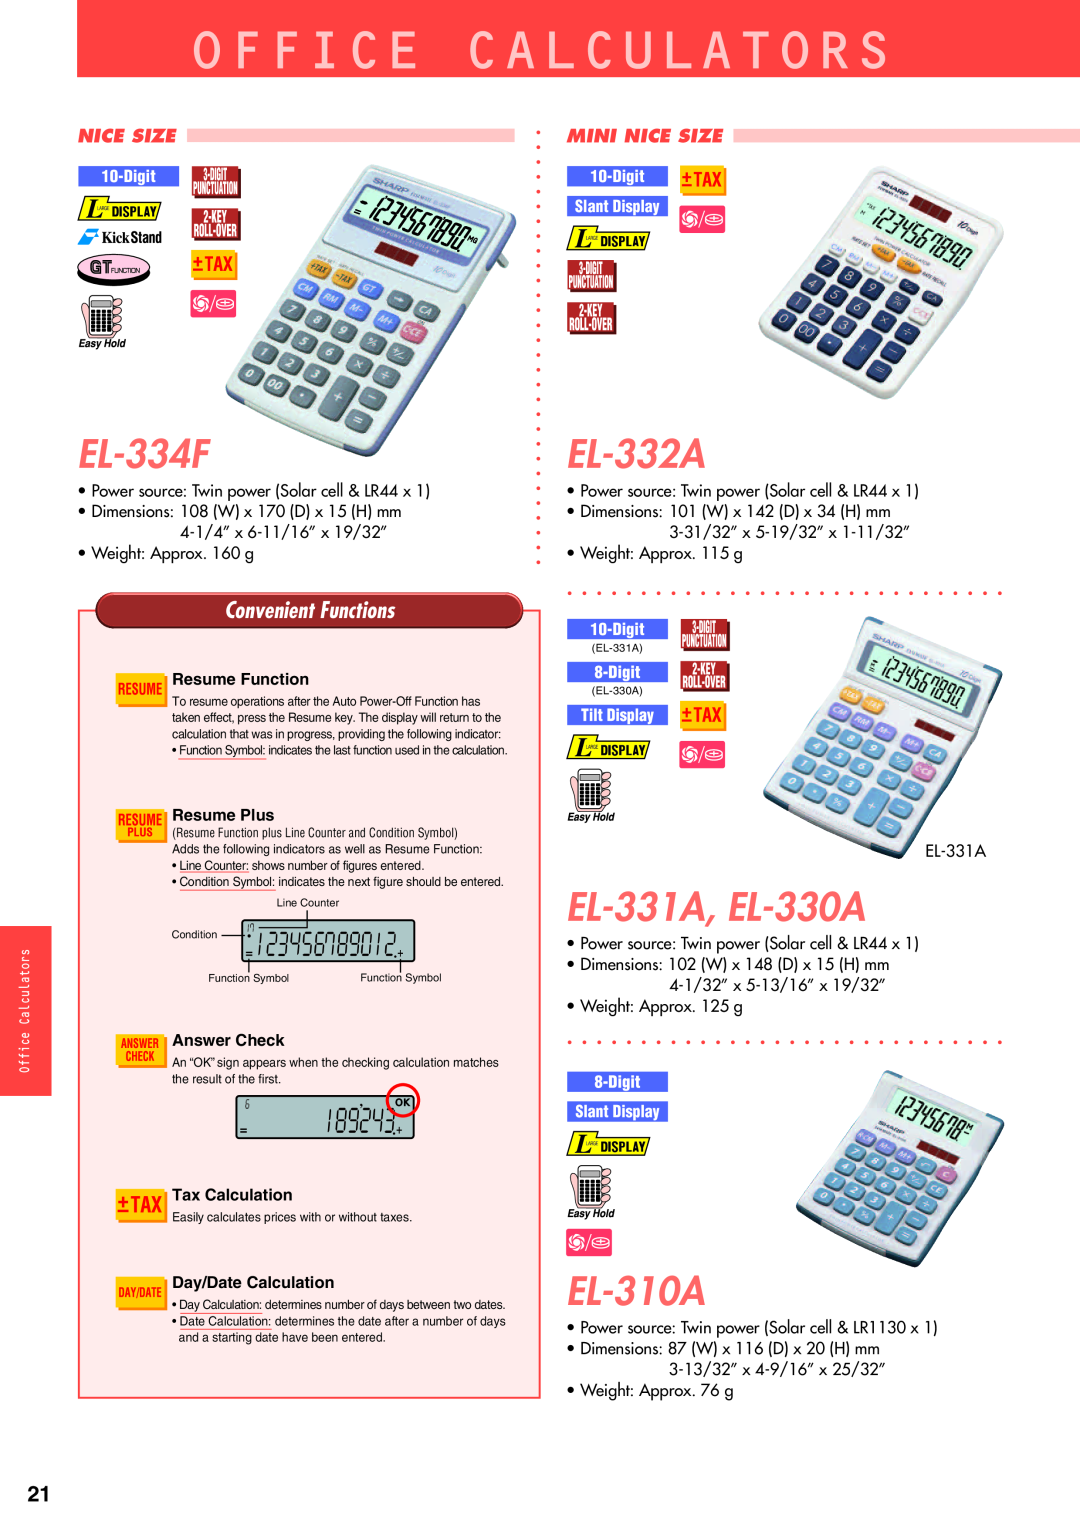 Sharp electronic calculator EL-334F, EL-332A, EL-331A, EL-330A, EL-310A, Office Calculators, Convenient Functions, Digit 